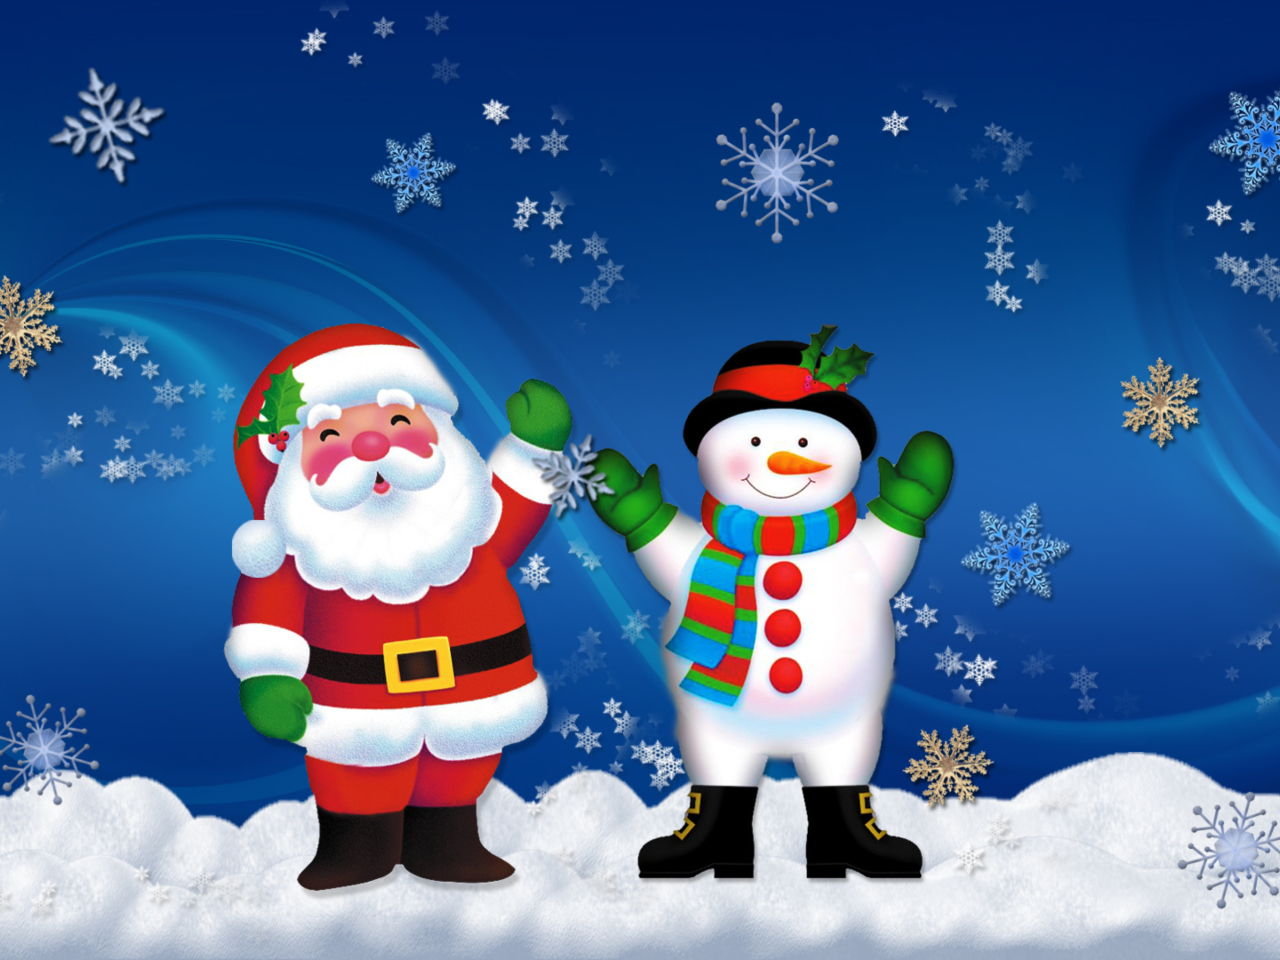 Das Hoo Hoo Christmas Wallpaper 1280x960